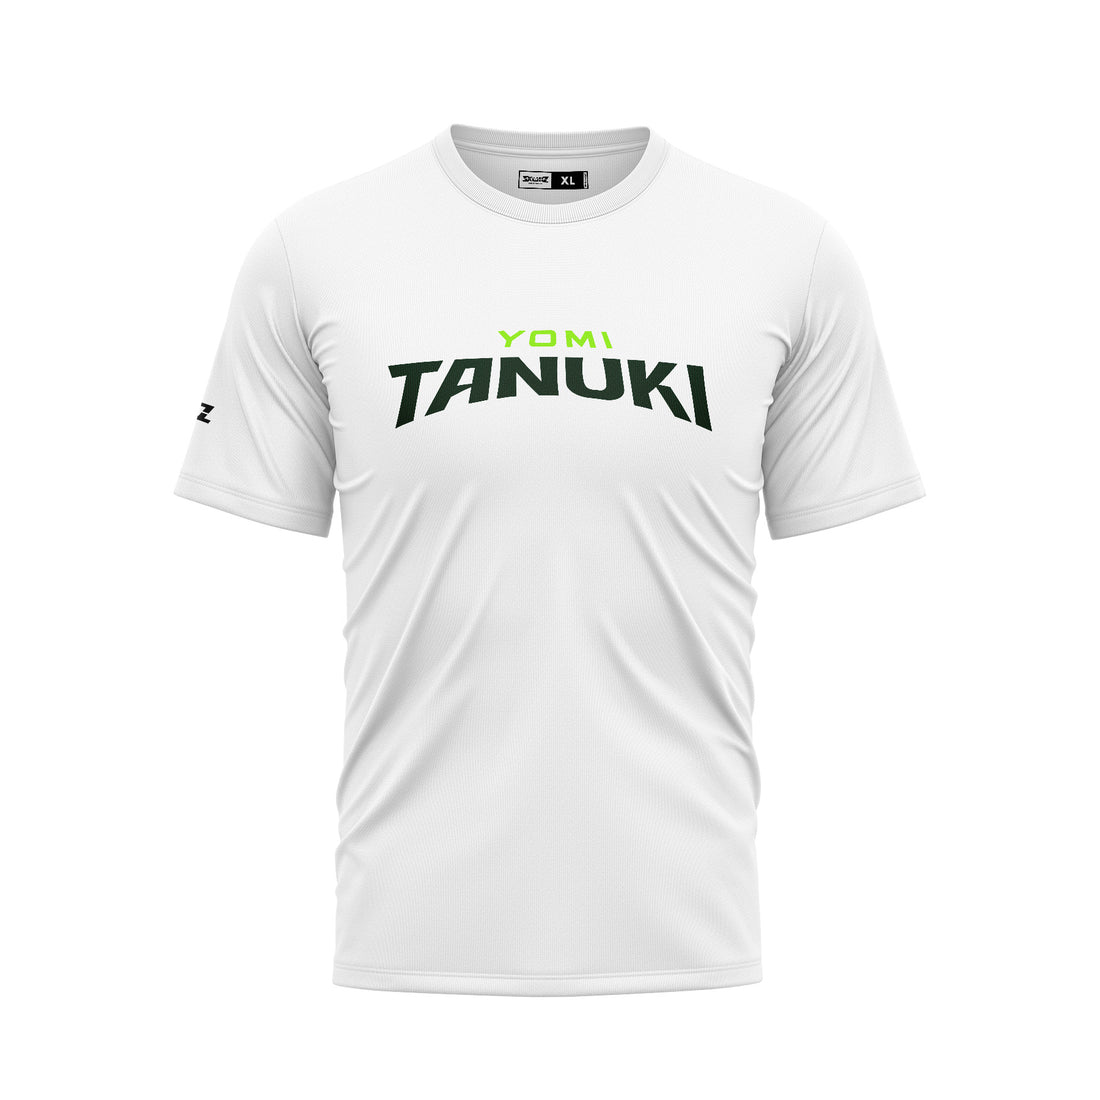 Yomi Tanuki SCC Logo Shirt